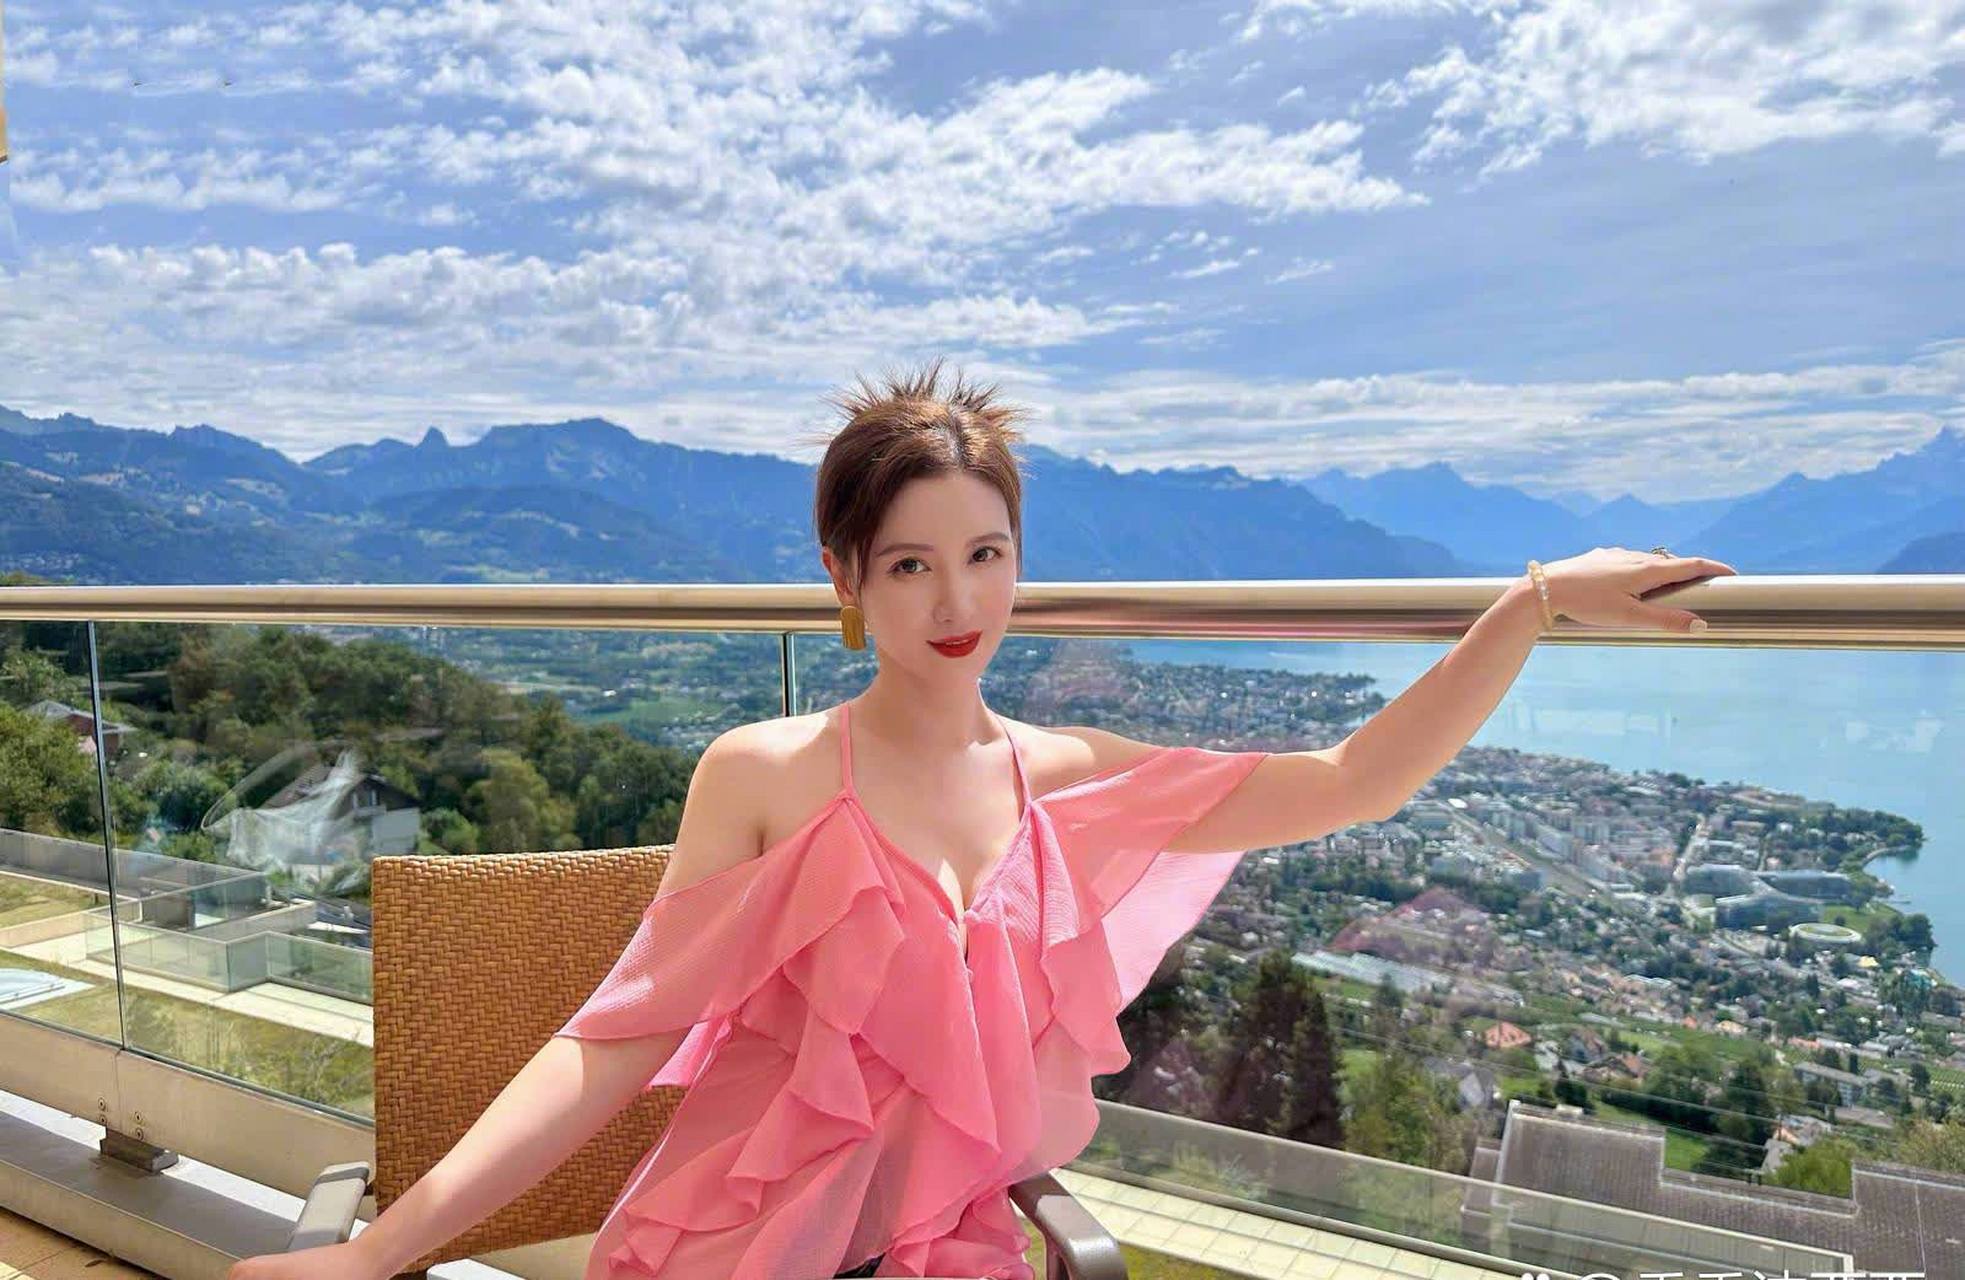 近日,演员张萌在微博上晒出了一组自己的美照